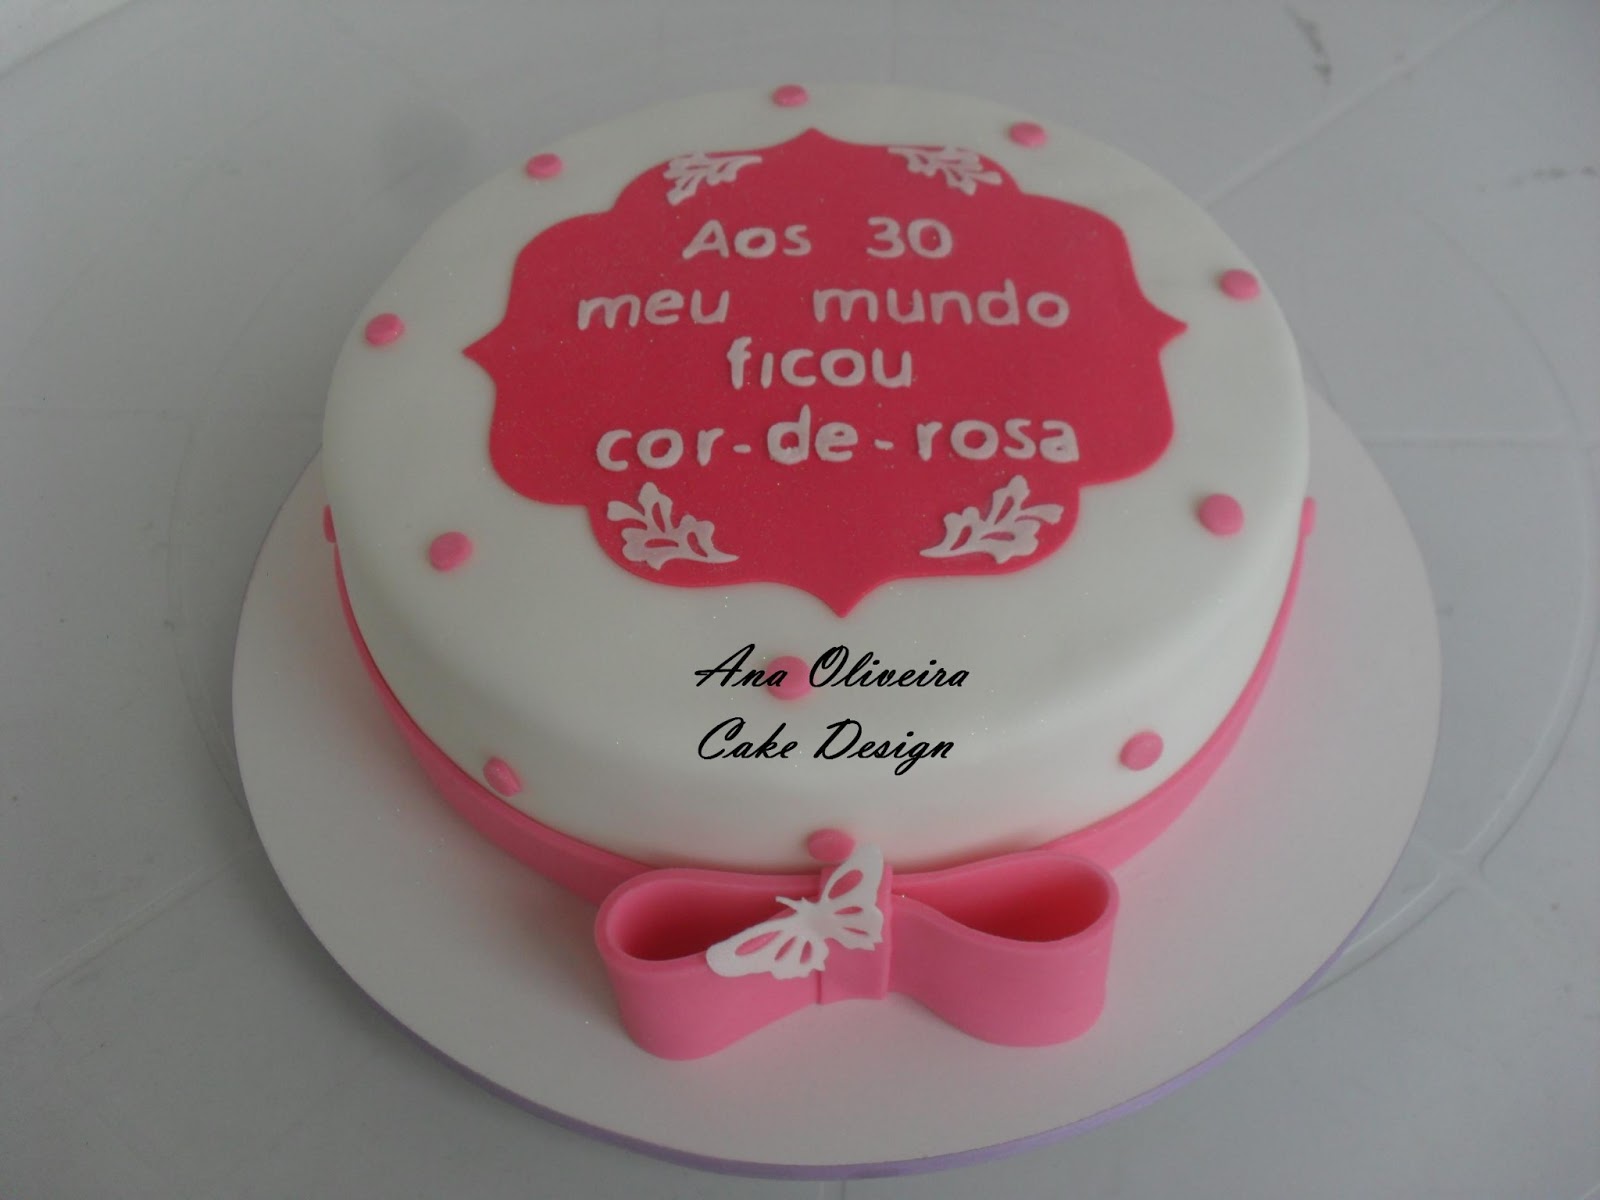 Bolo Teem Maquiagem, Ana Oliveira Cake Design